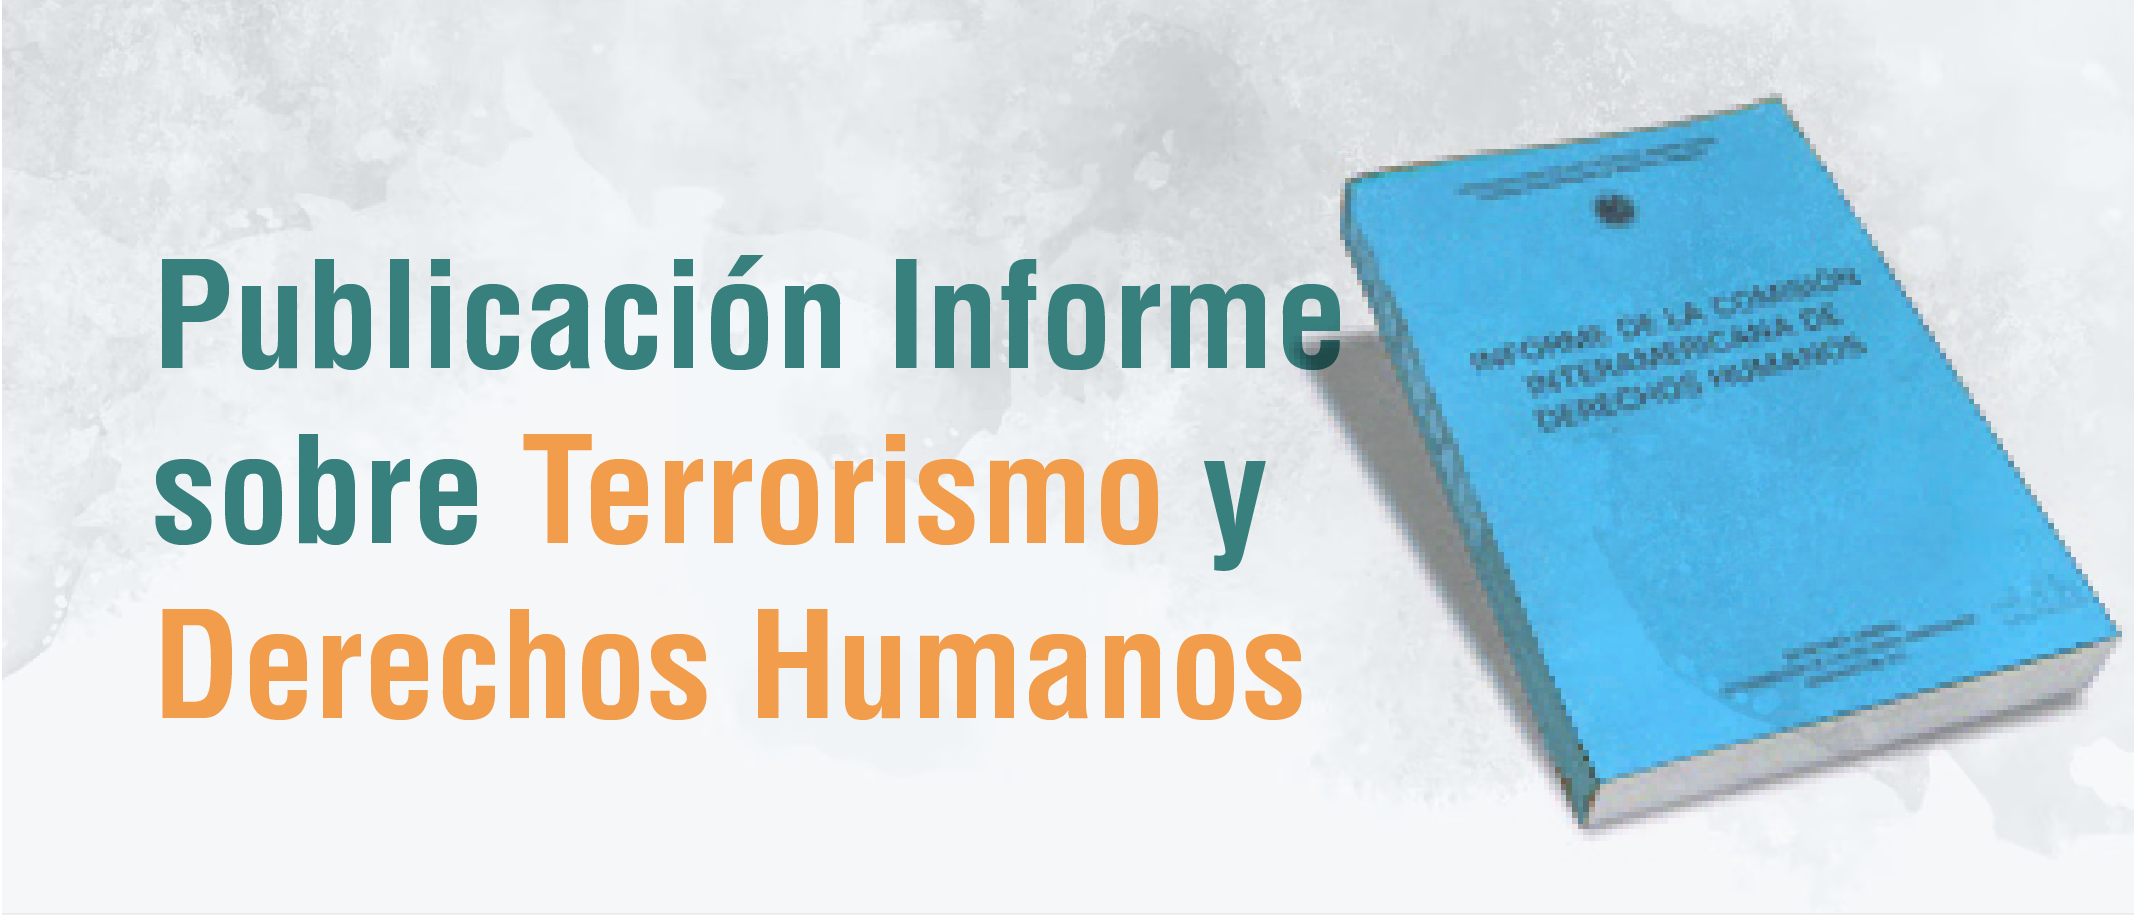 Publicación del Informe sobre Terrorismo y Derechos Humanos